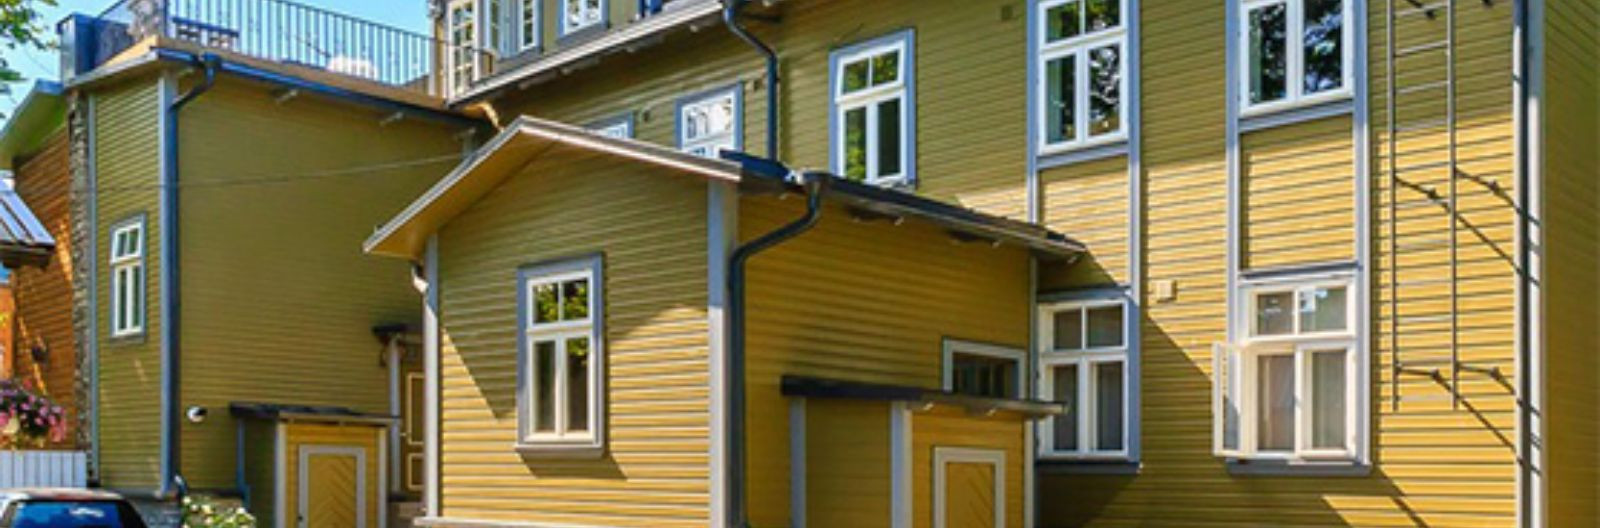 Serko OÜ põhitegevuseks on katuste ja hingavate fassaadide ehitus. Pakume terviklahendusi hoone välisilme parandamiseks.    Lame- ja viilkatuste ehitus, vihmave